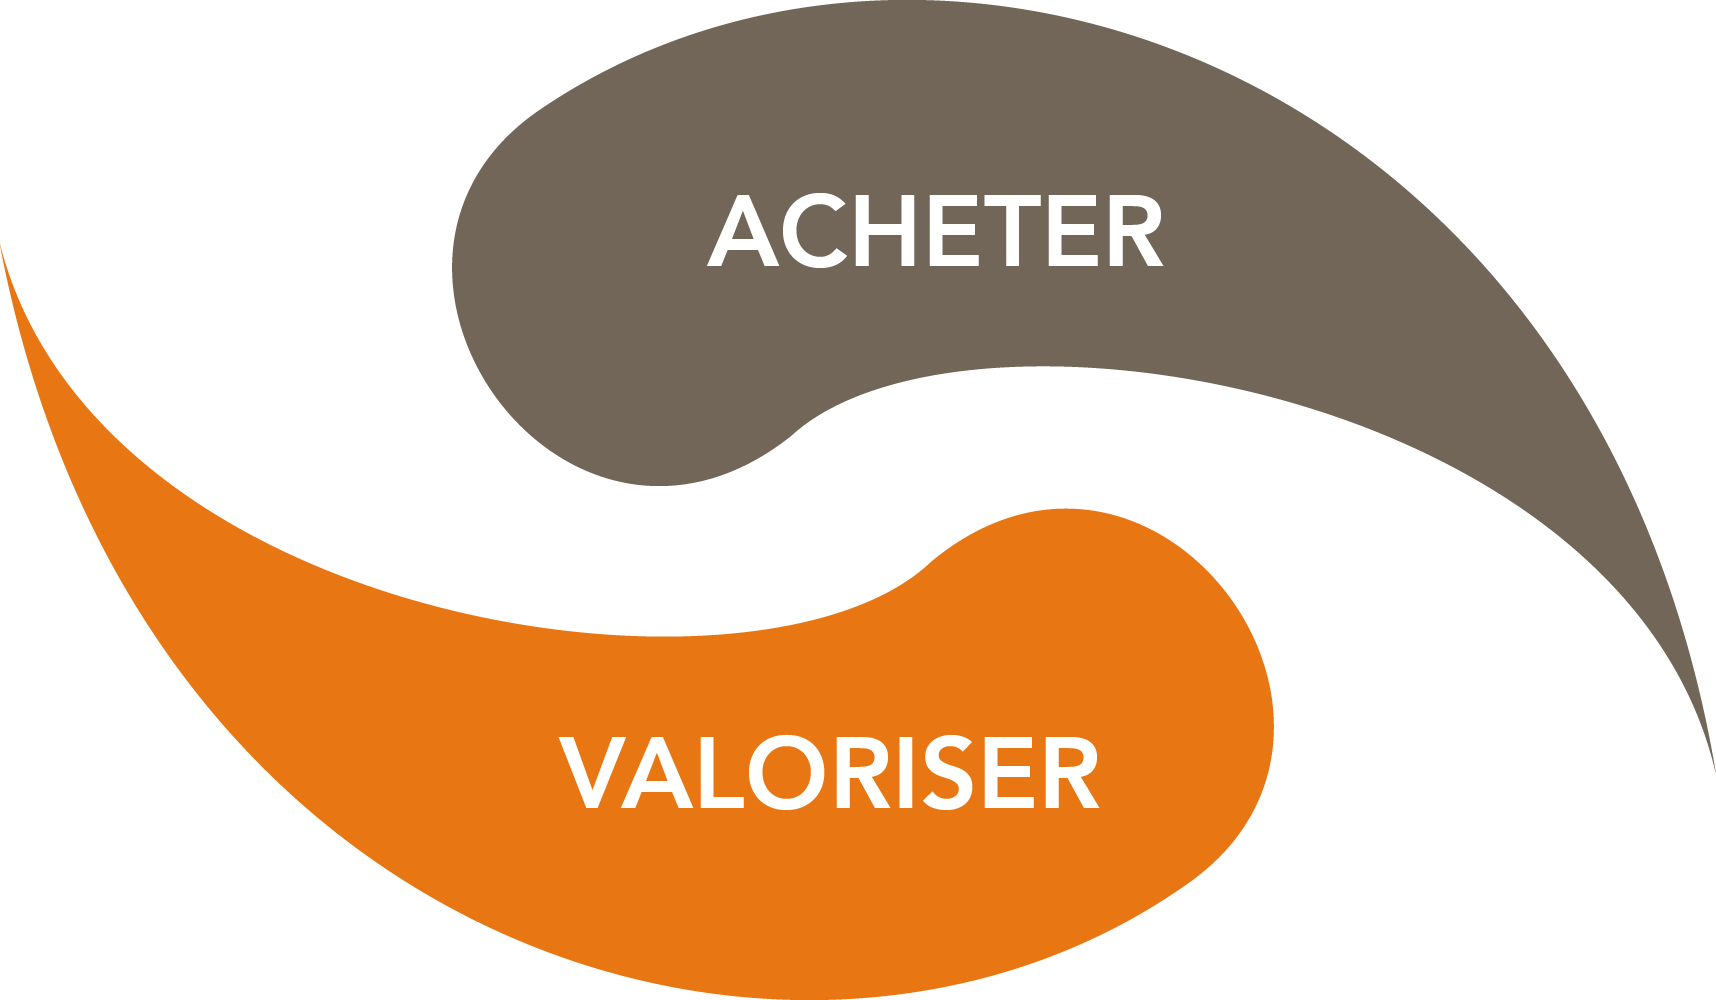 Acheter / Valoriser